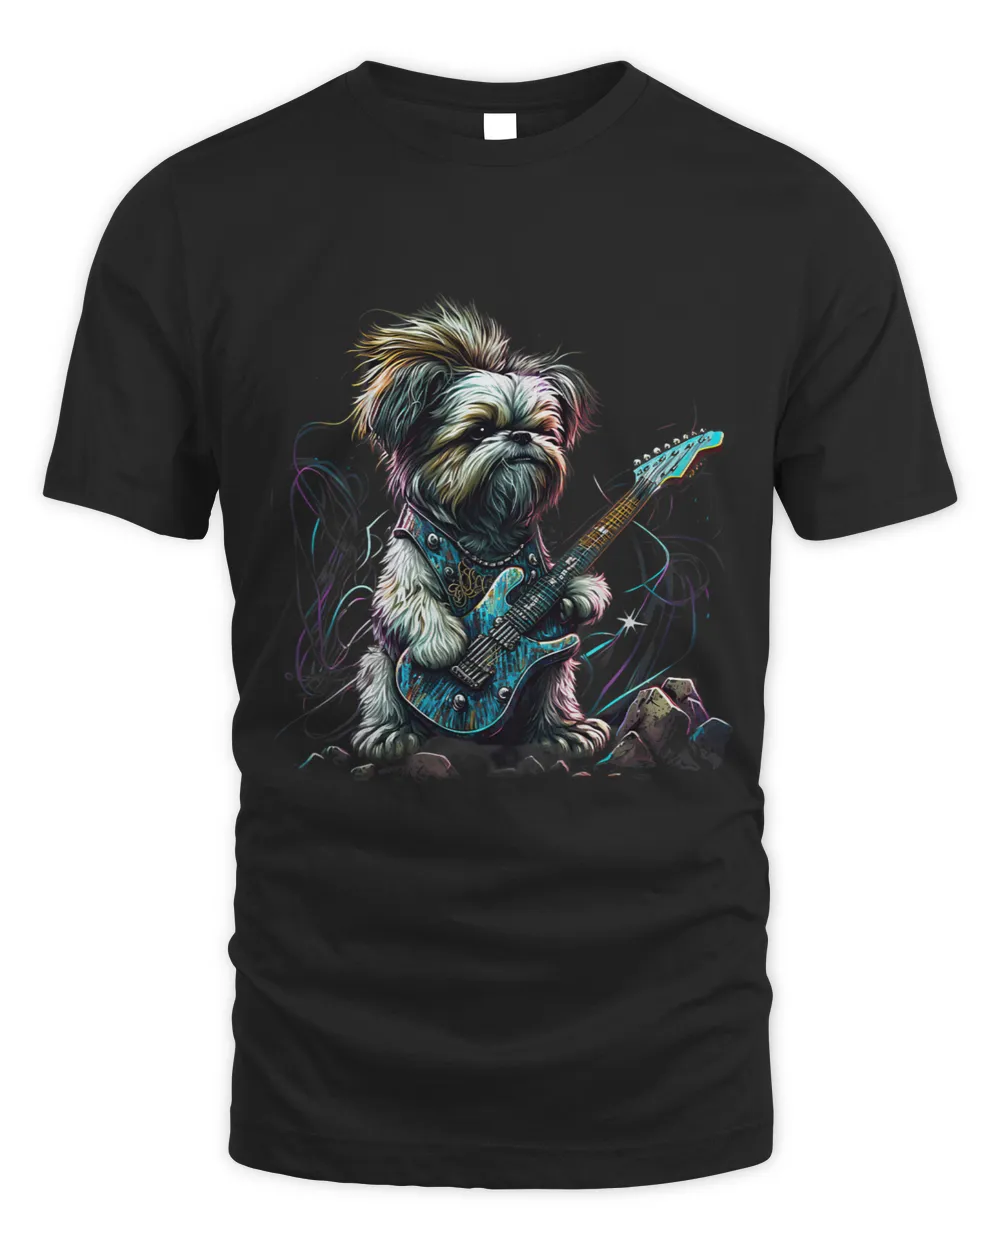 Shih Tzu dog Playing Electric Guitar Rock